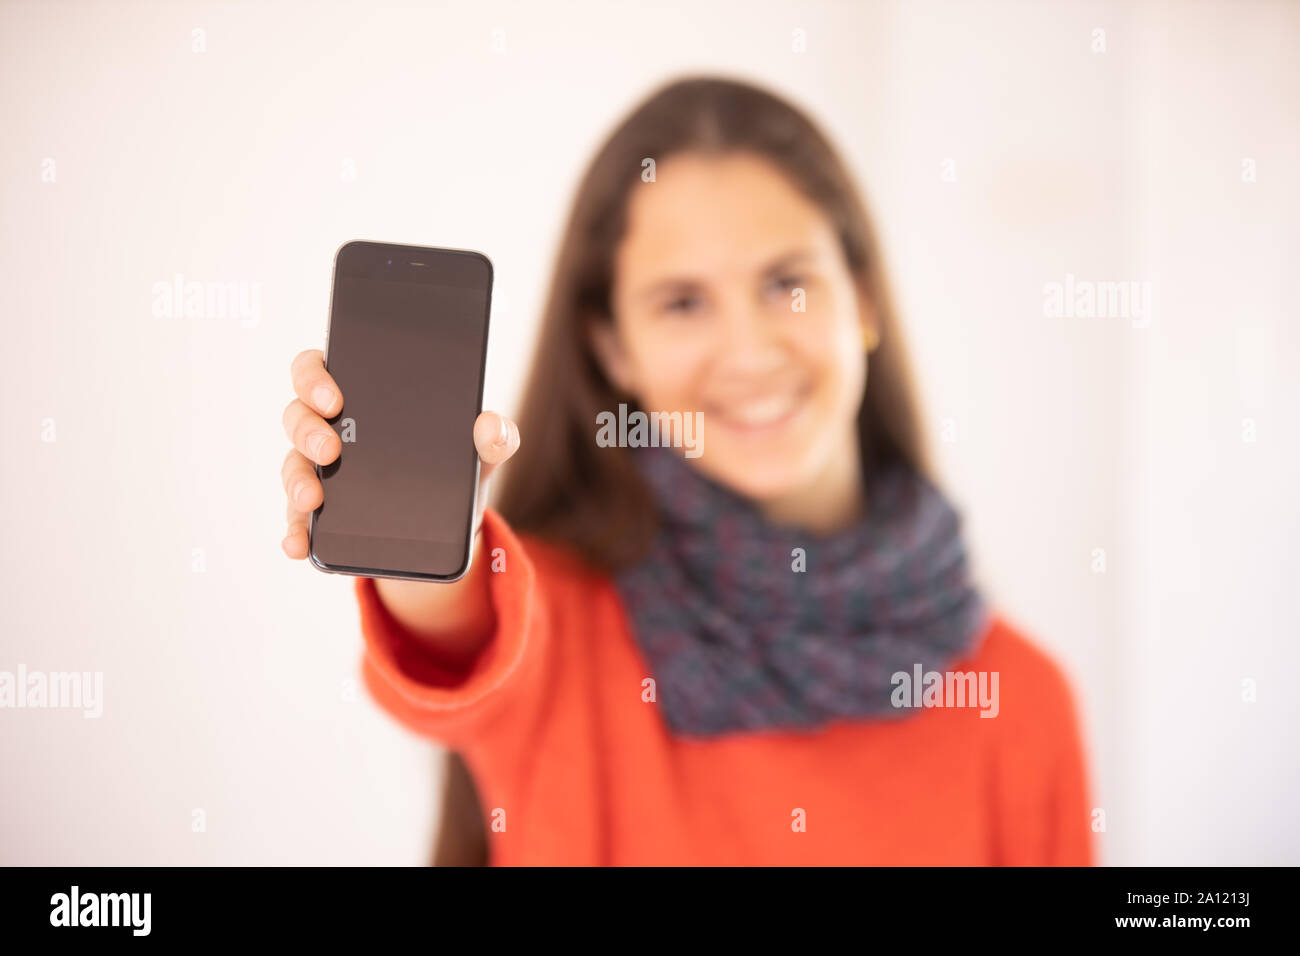 Chica adolescente feliz mostrando una maqueta de teléfono inteligente Stock Photo